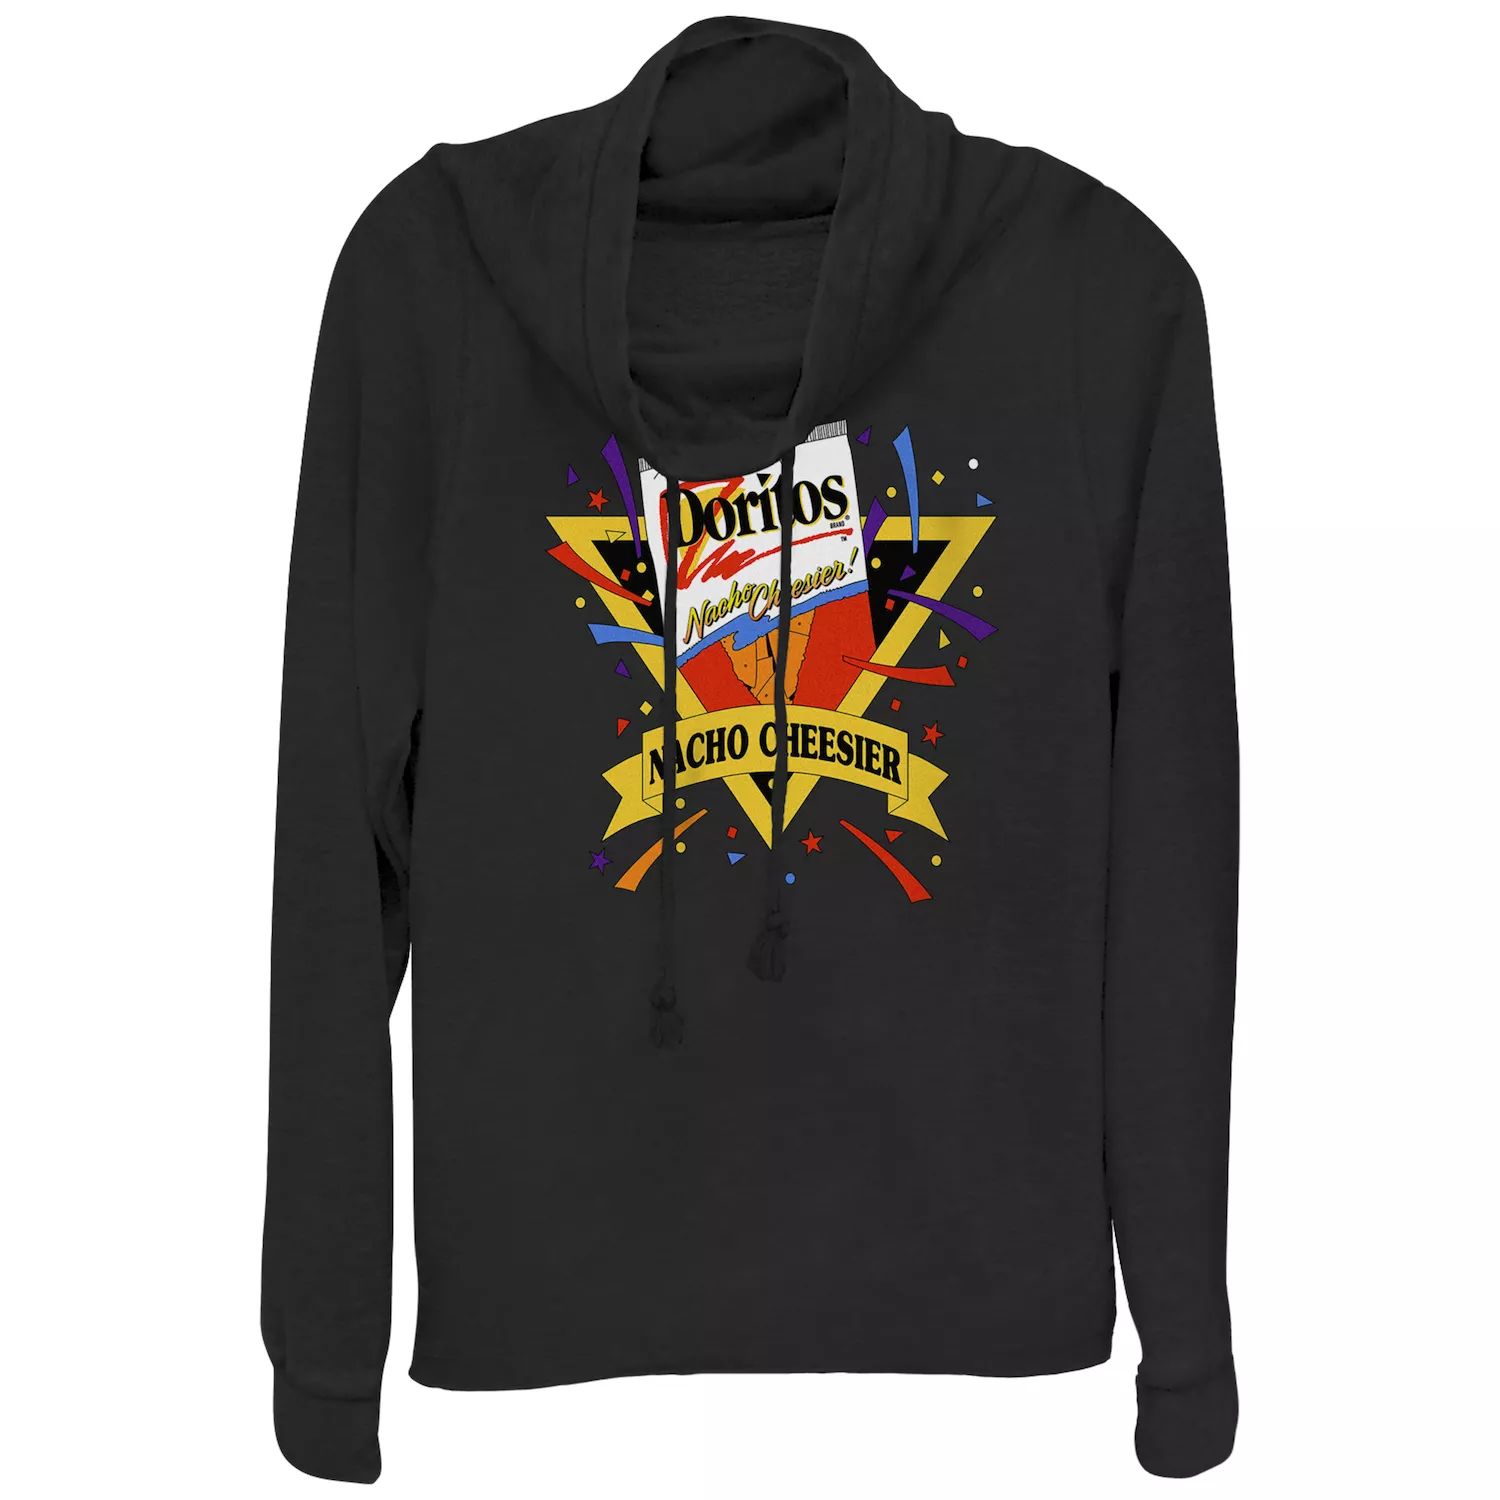 цена Пуловер с воротником-хомутом и винтажным логотипом Doritos Nacho Cheesier для юниоров Doritos